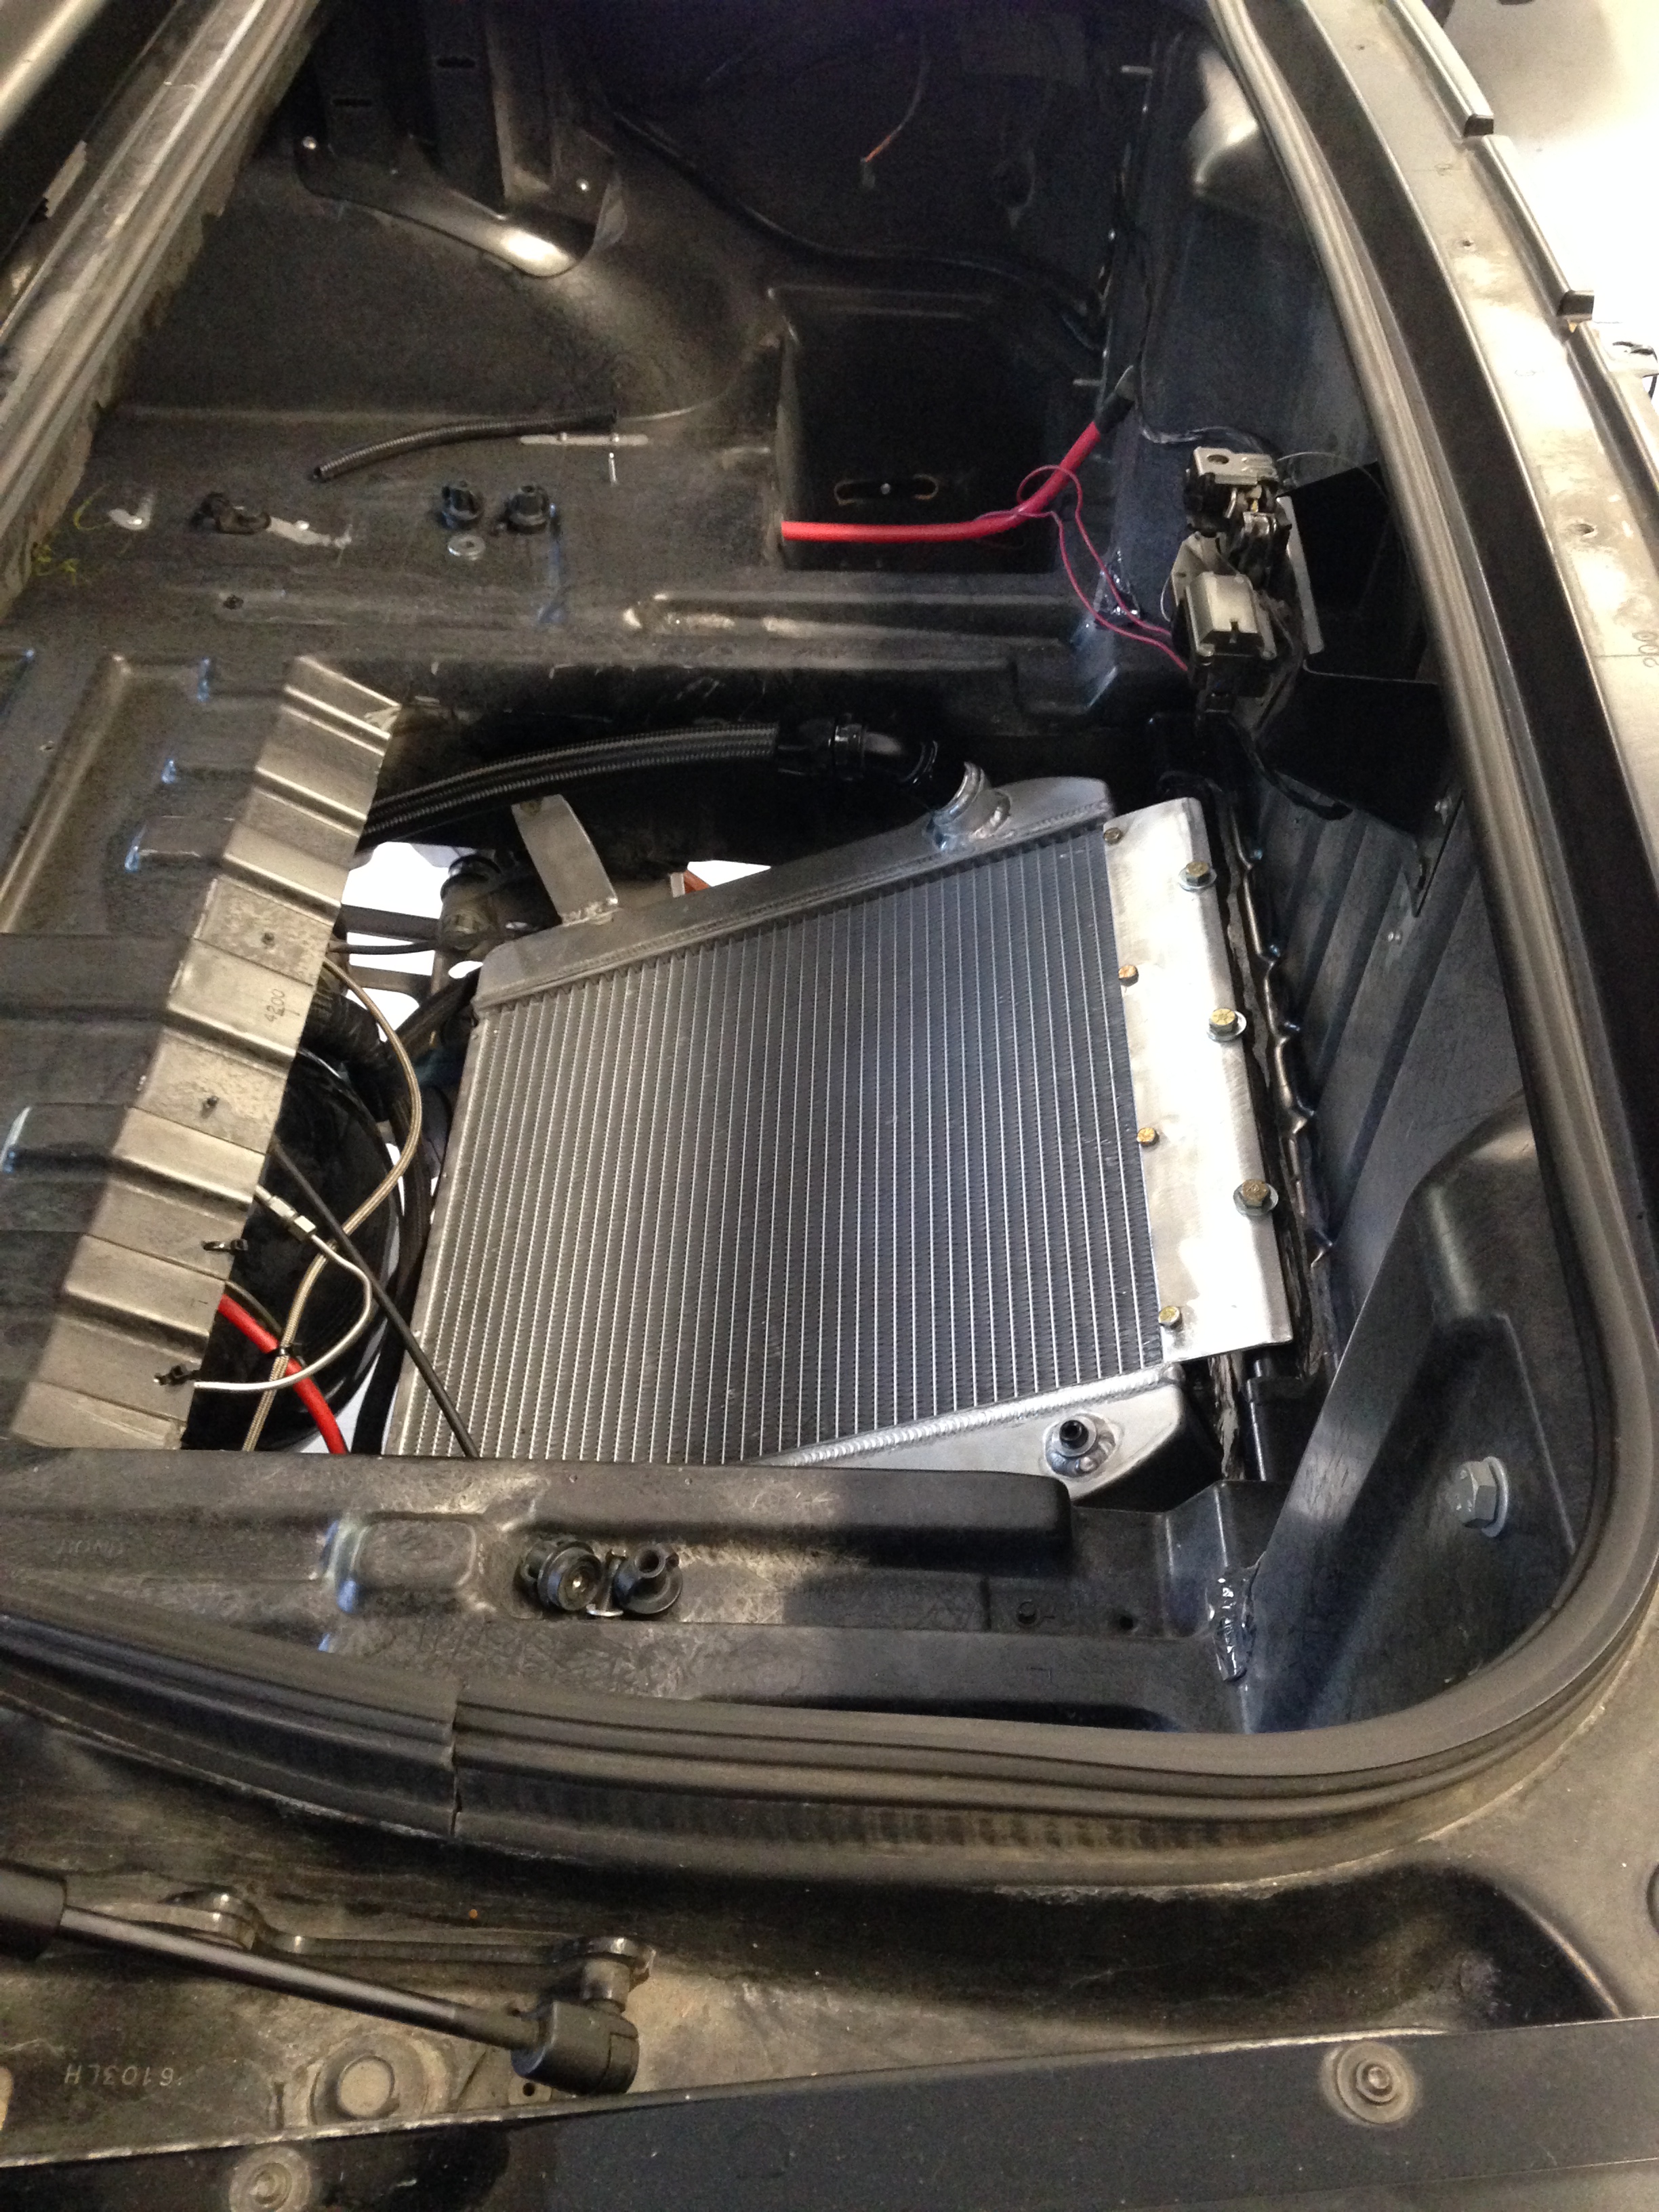 Alternative intercooler and radiator mounting locations - CorvetteForum -  Chevrolet Corvette Forum Discussion